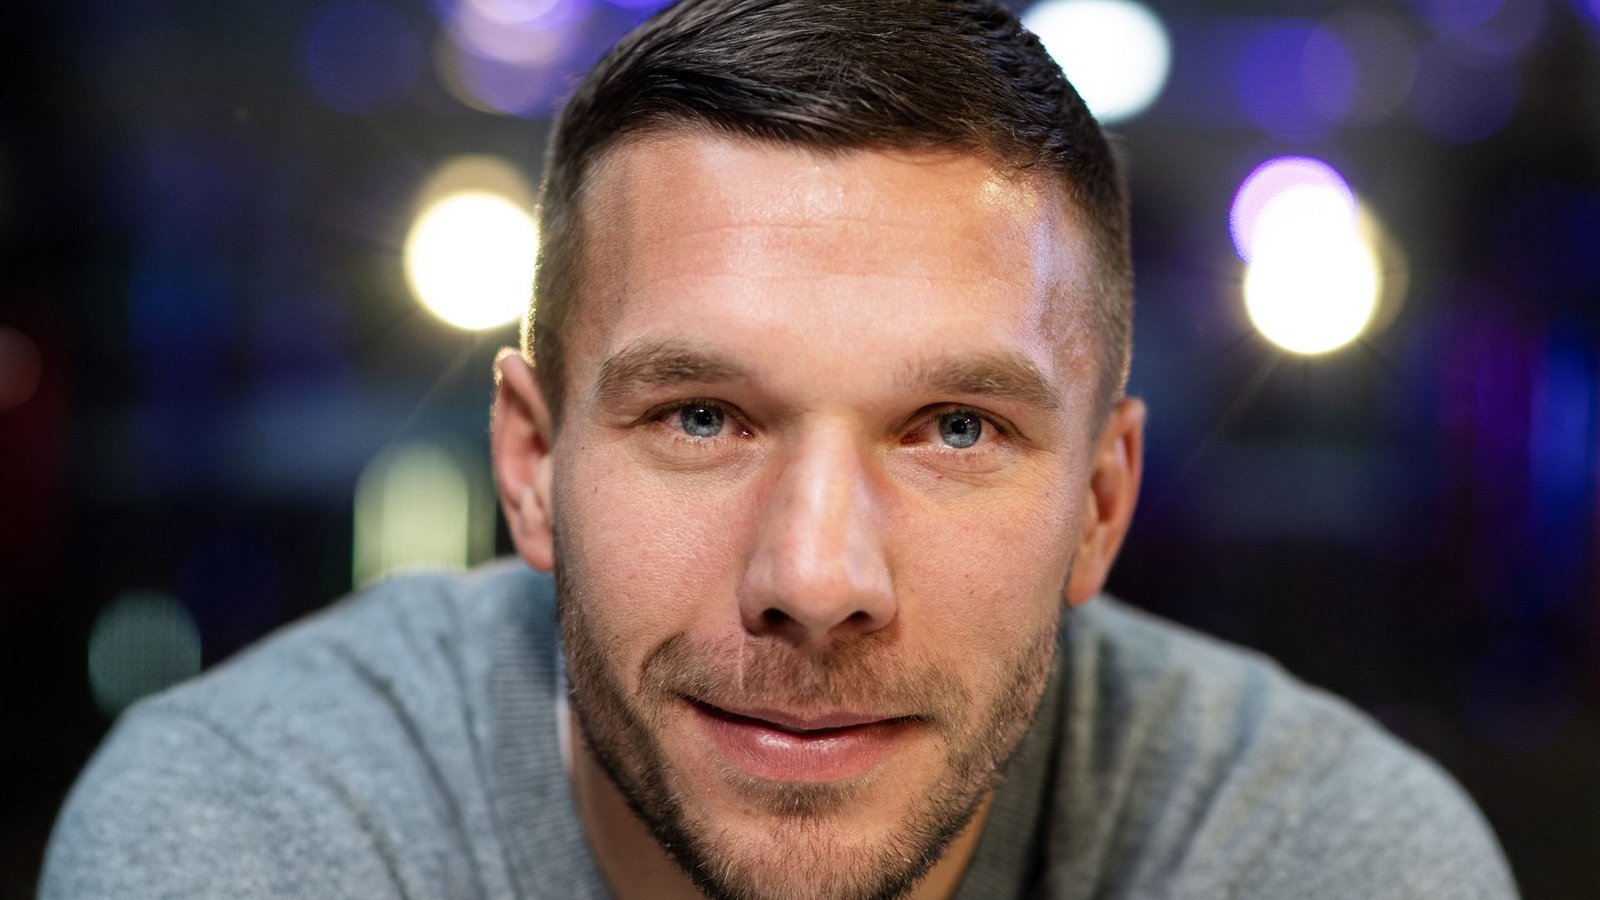 Der frühere Fußall-Nationalspieler Lukas Podolski ist zum dritten Mal Vater geworden.Foto: Bernd Thissen/dpa